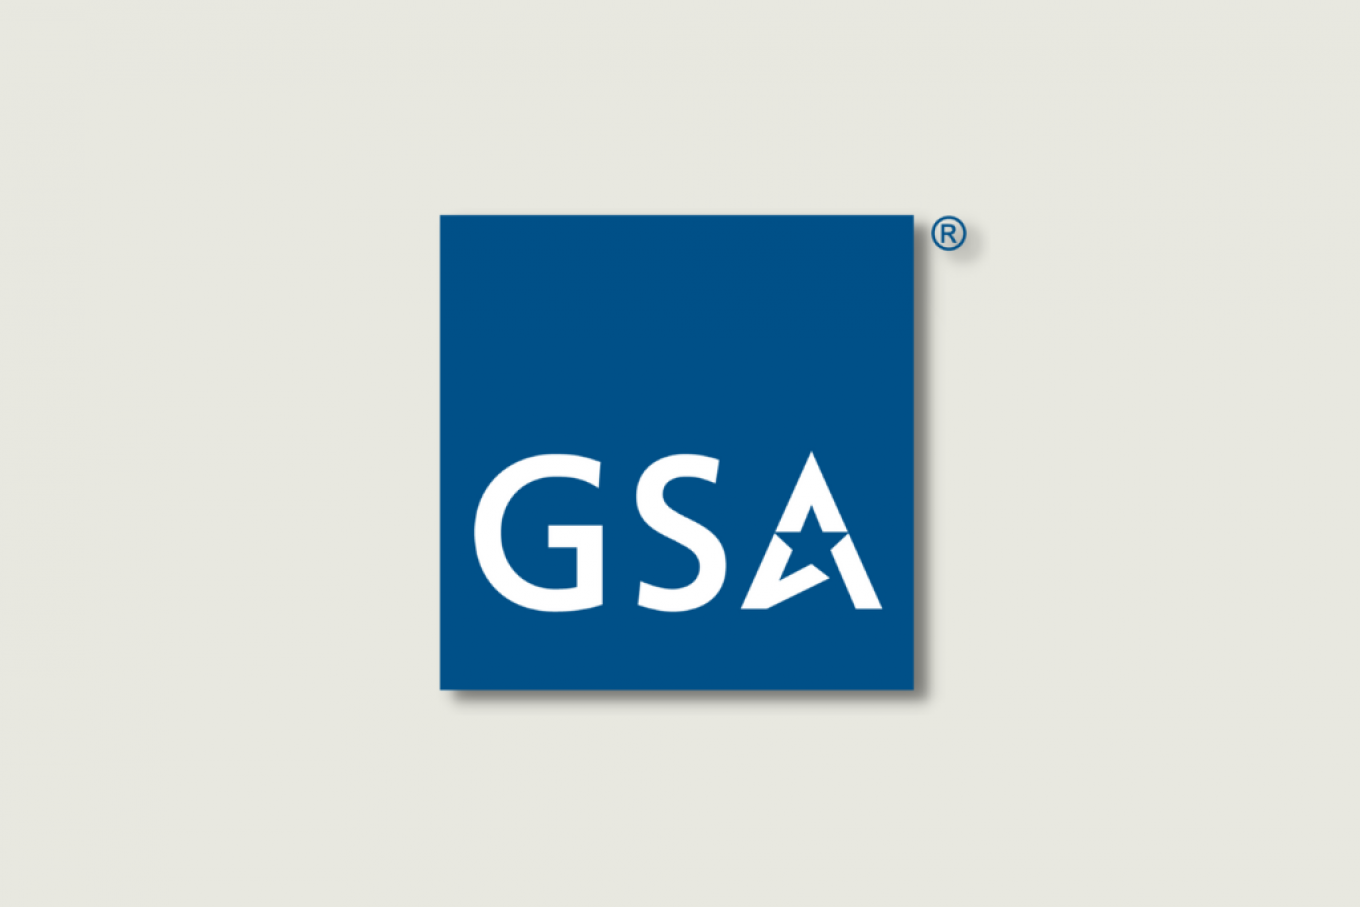 GSA contract